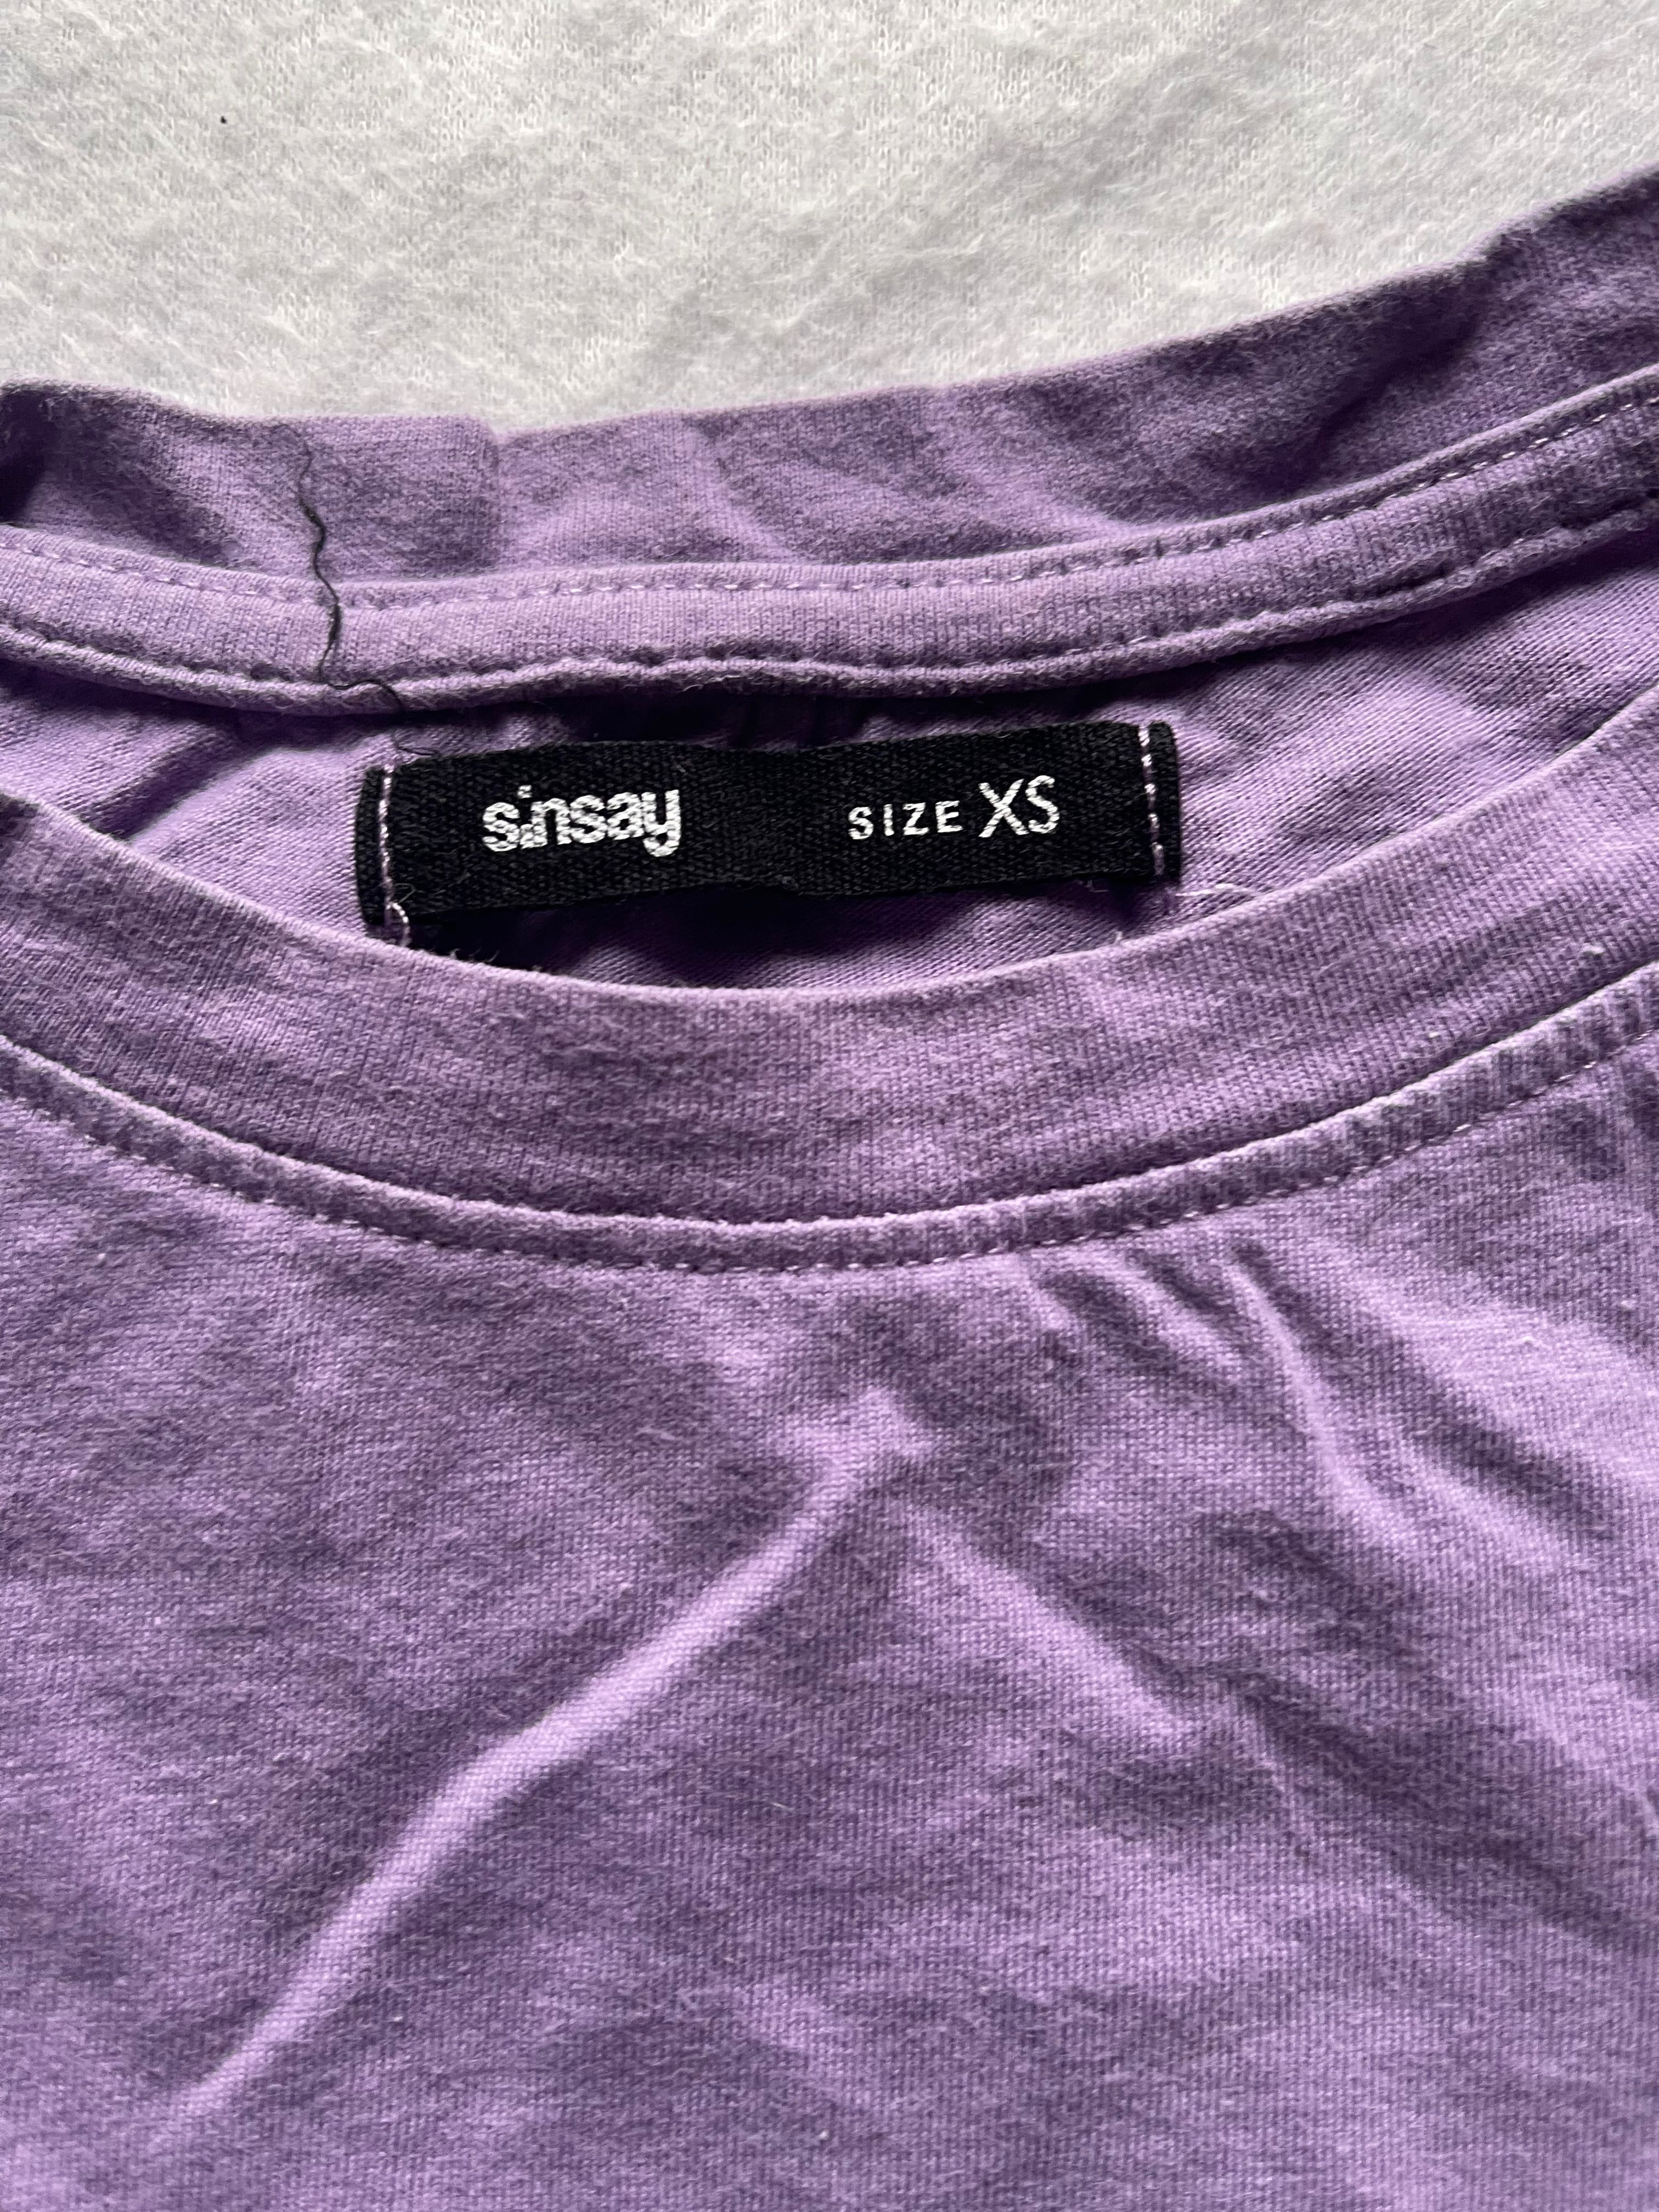 Fioletowa koszulka - Sinsay - XS